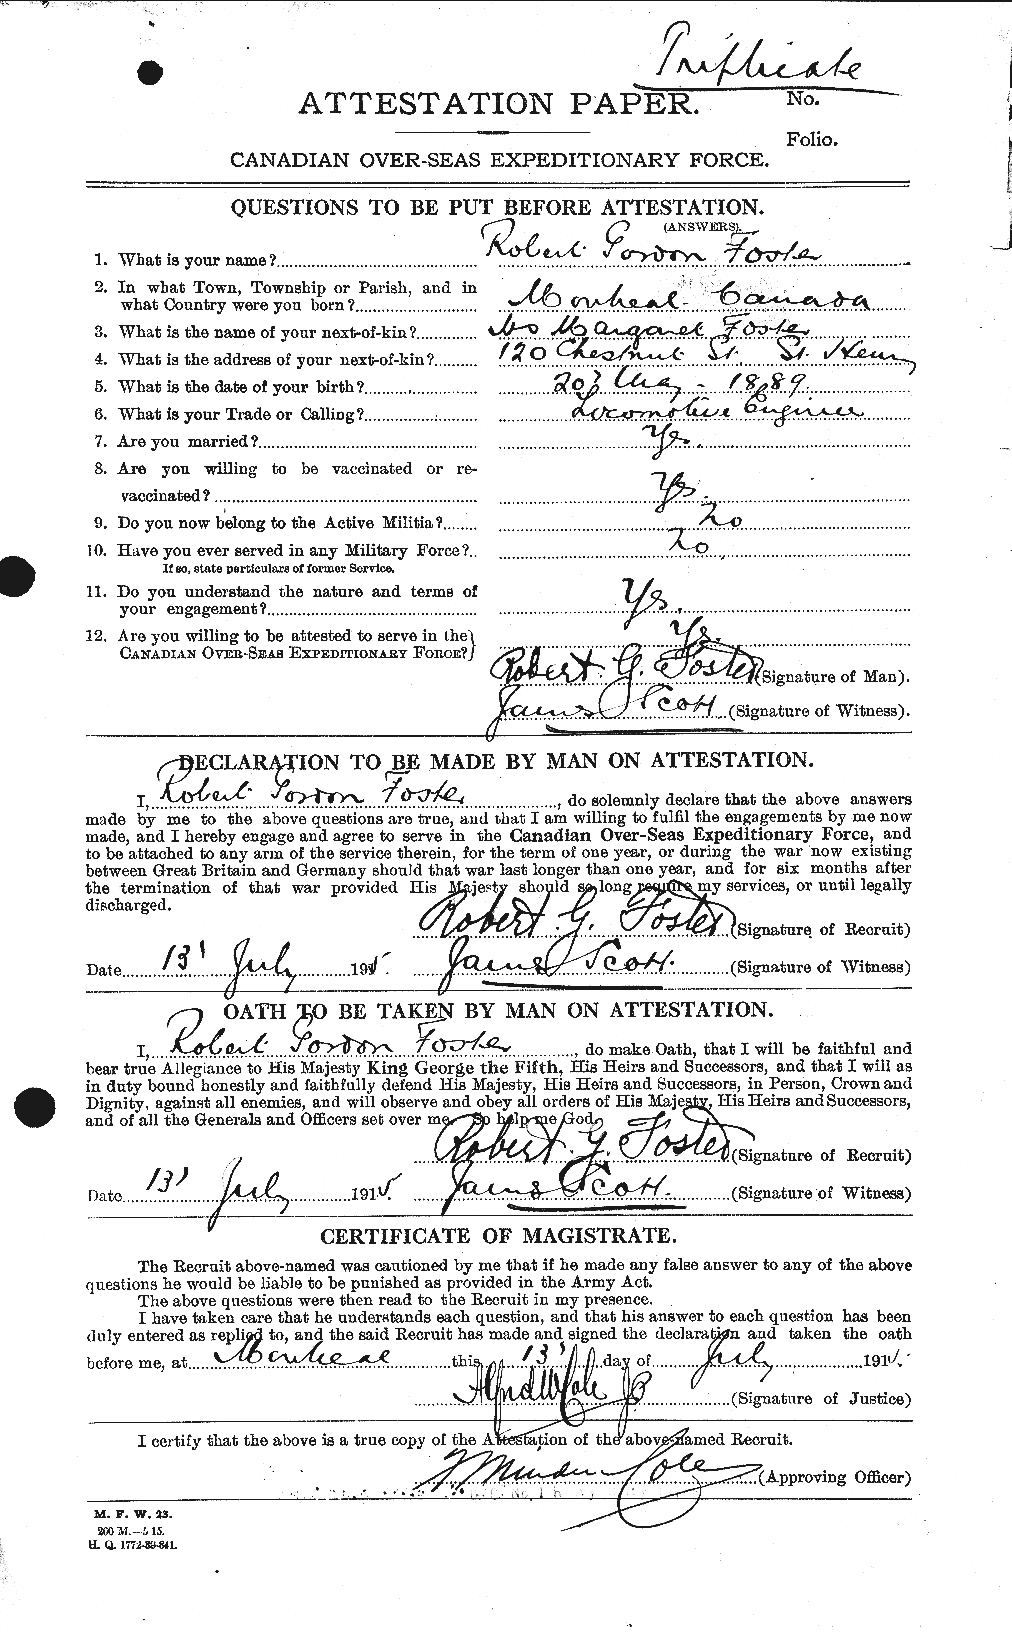 Dossiers du Personnel de la Première Guerre mondiale - CEC 335175a